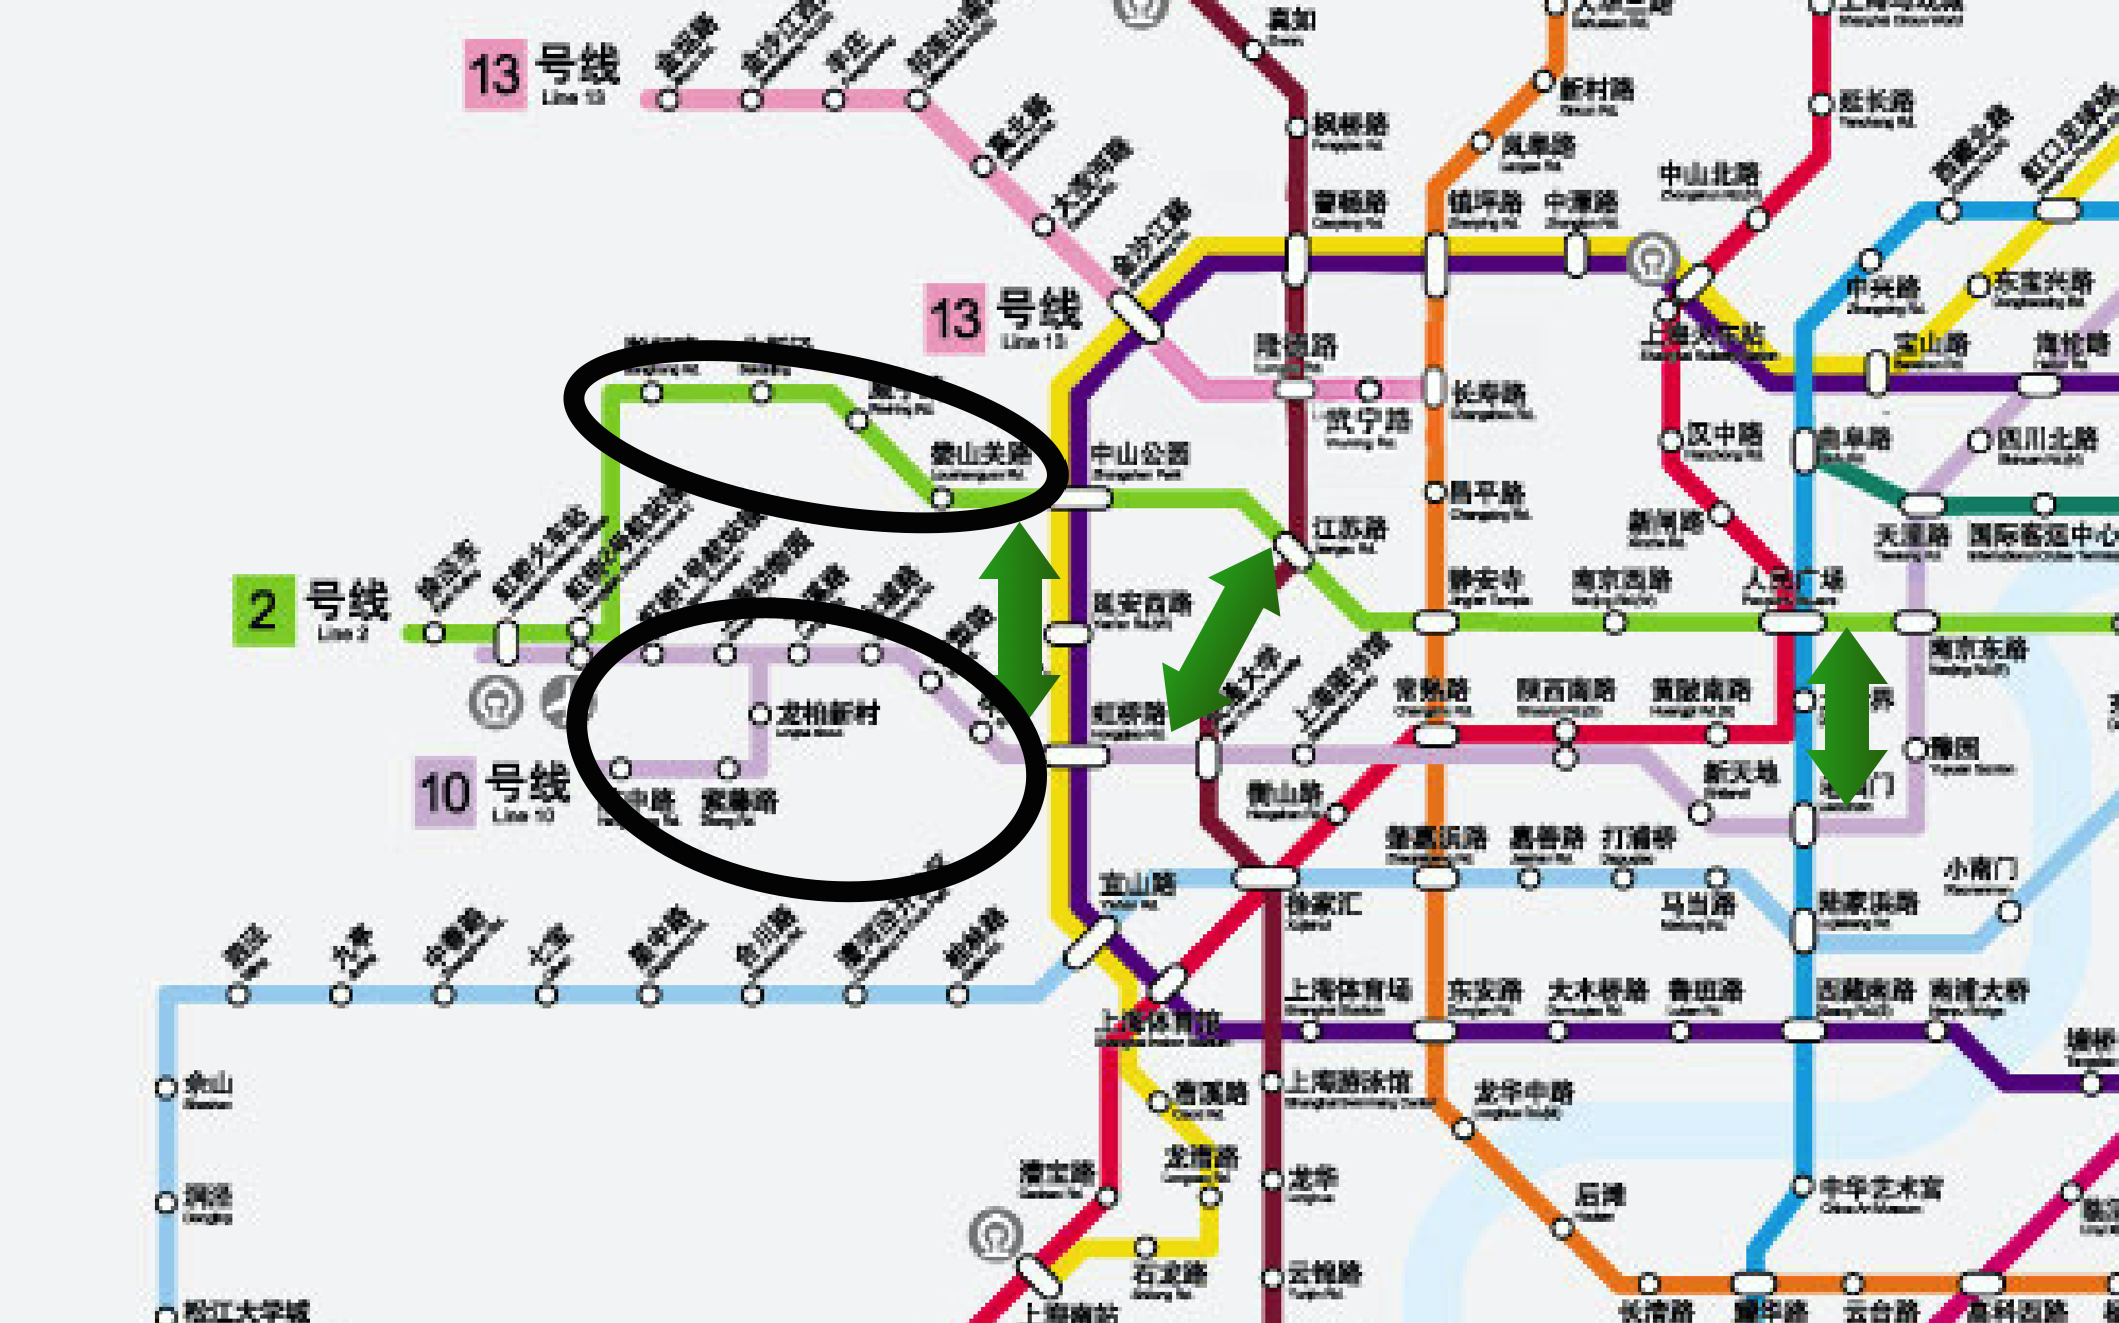 上海地铁10号线上下行方向两条轨道为何交换了位置? 